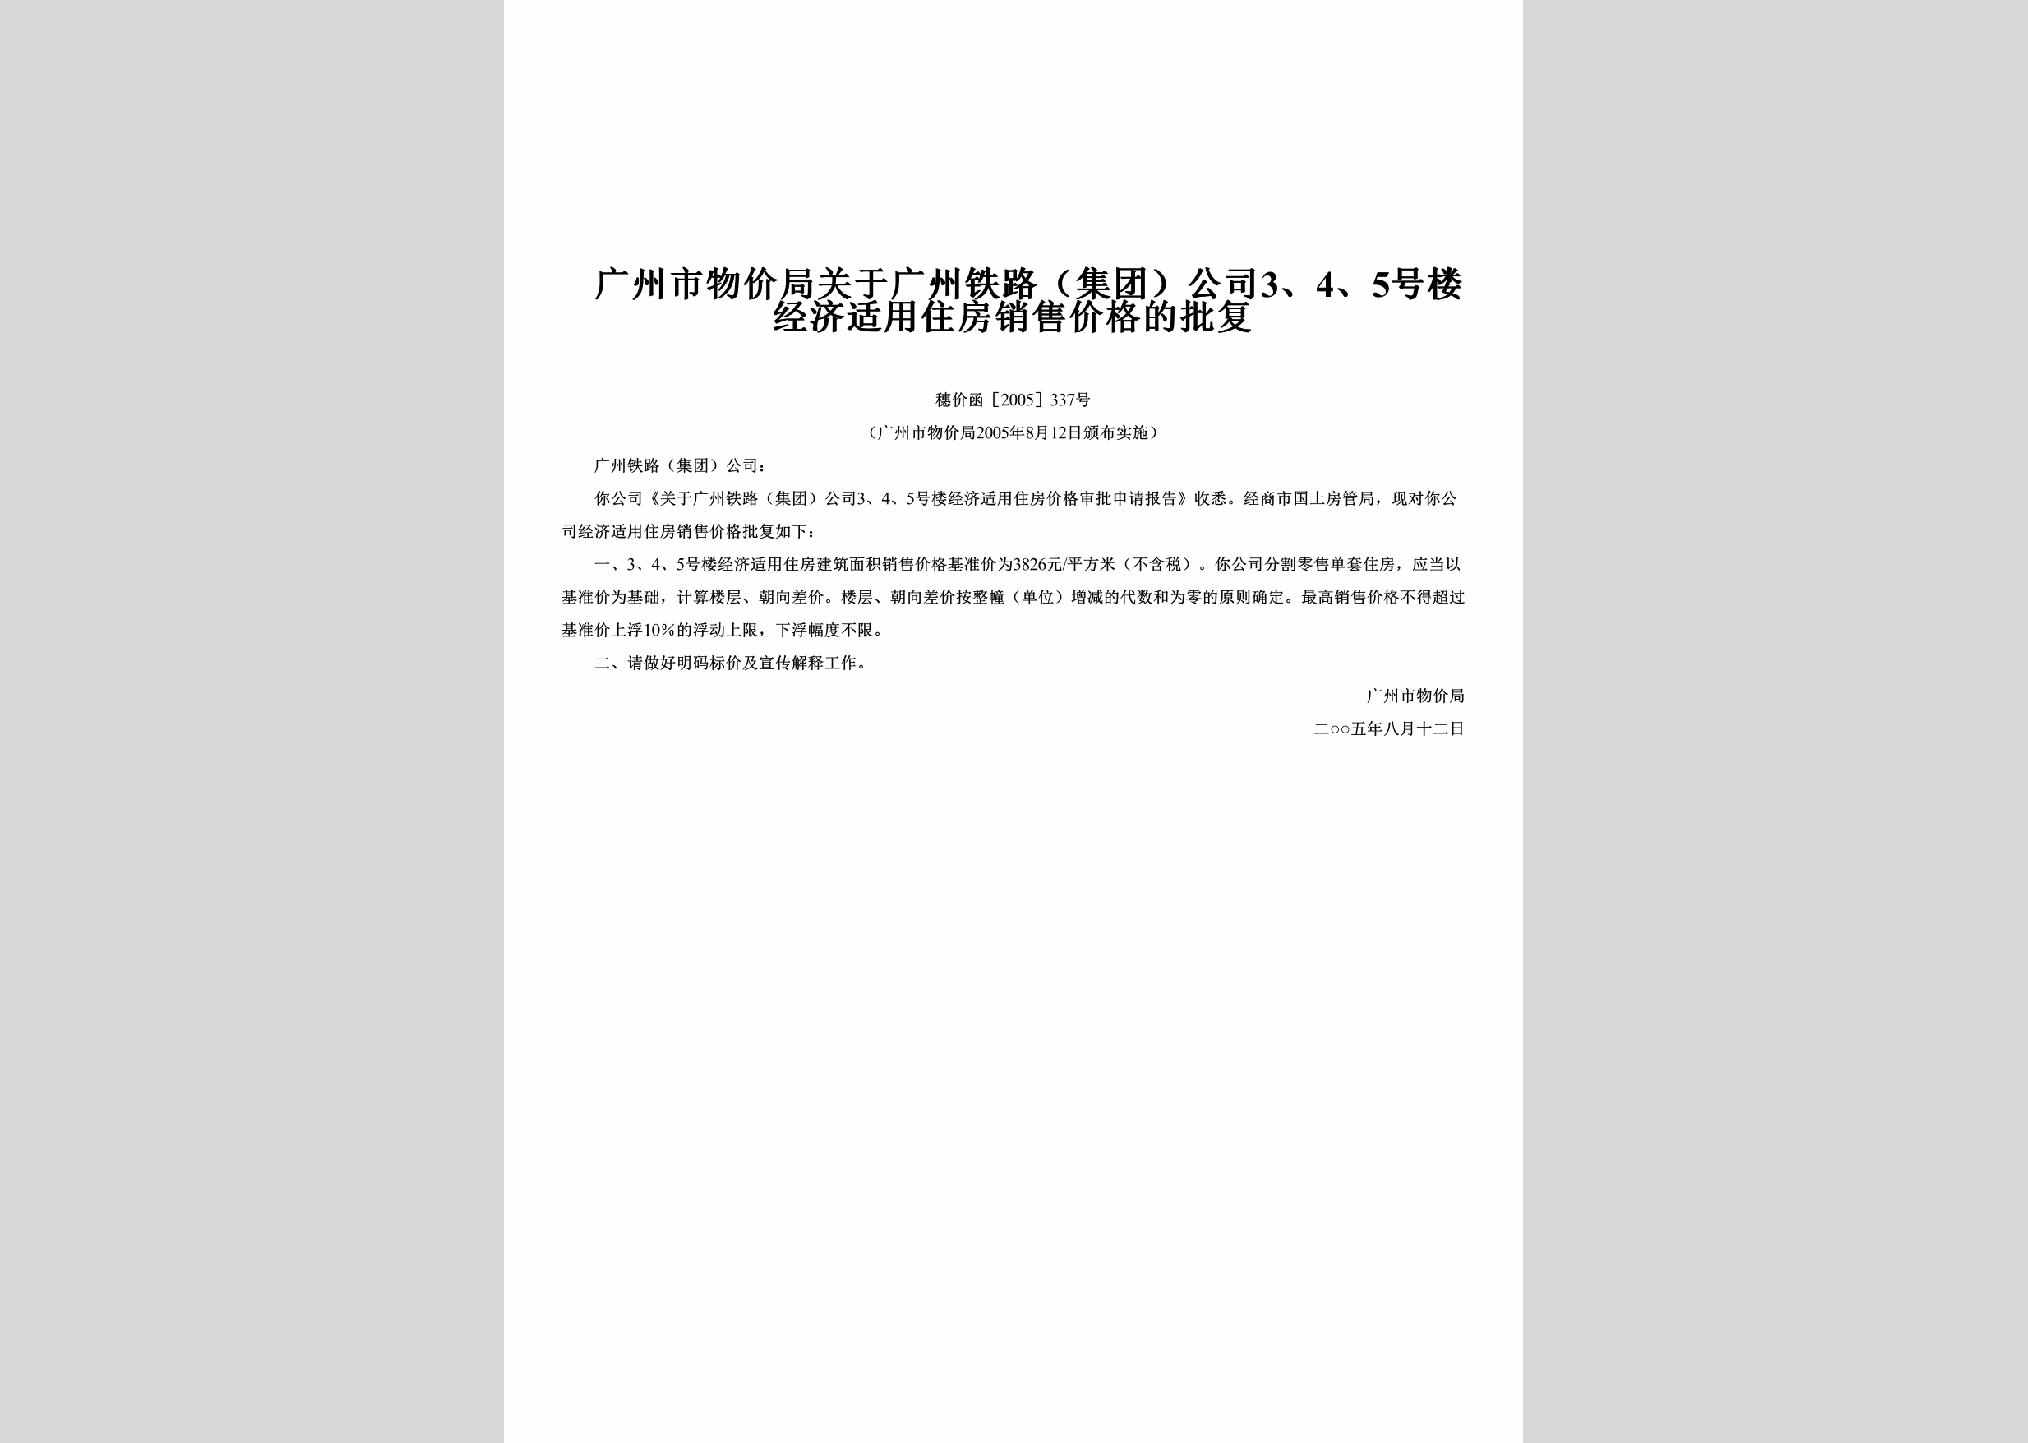 穗价函[2005]337号：关于广州铁路（集团）公司3、4、5号楼经济适用住房销售价格的批复